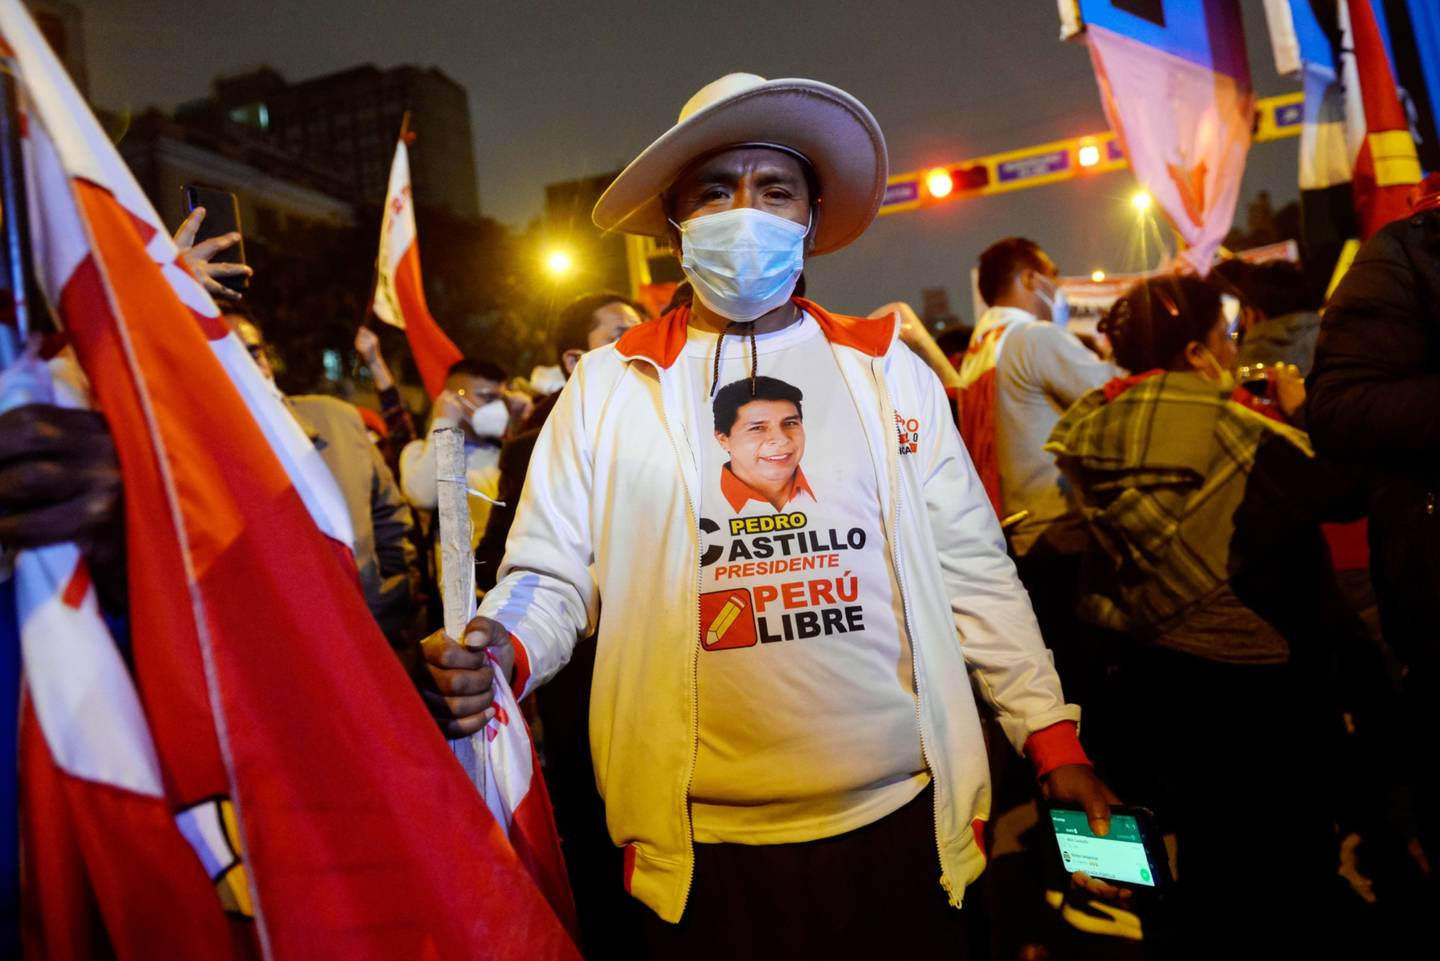 Los asistentes esperan la llegada de Pedro Castillo, candidato presidencial por el partido Perú Libre, a Lima, Perú, el jueves 10 de junio de 2021.dfd